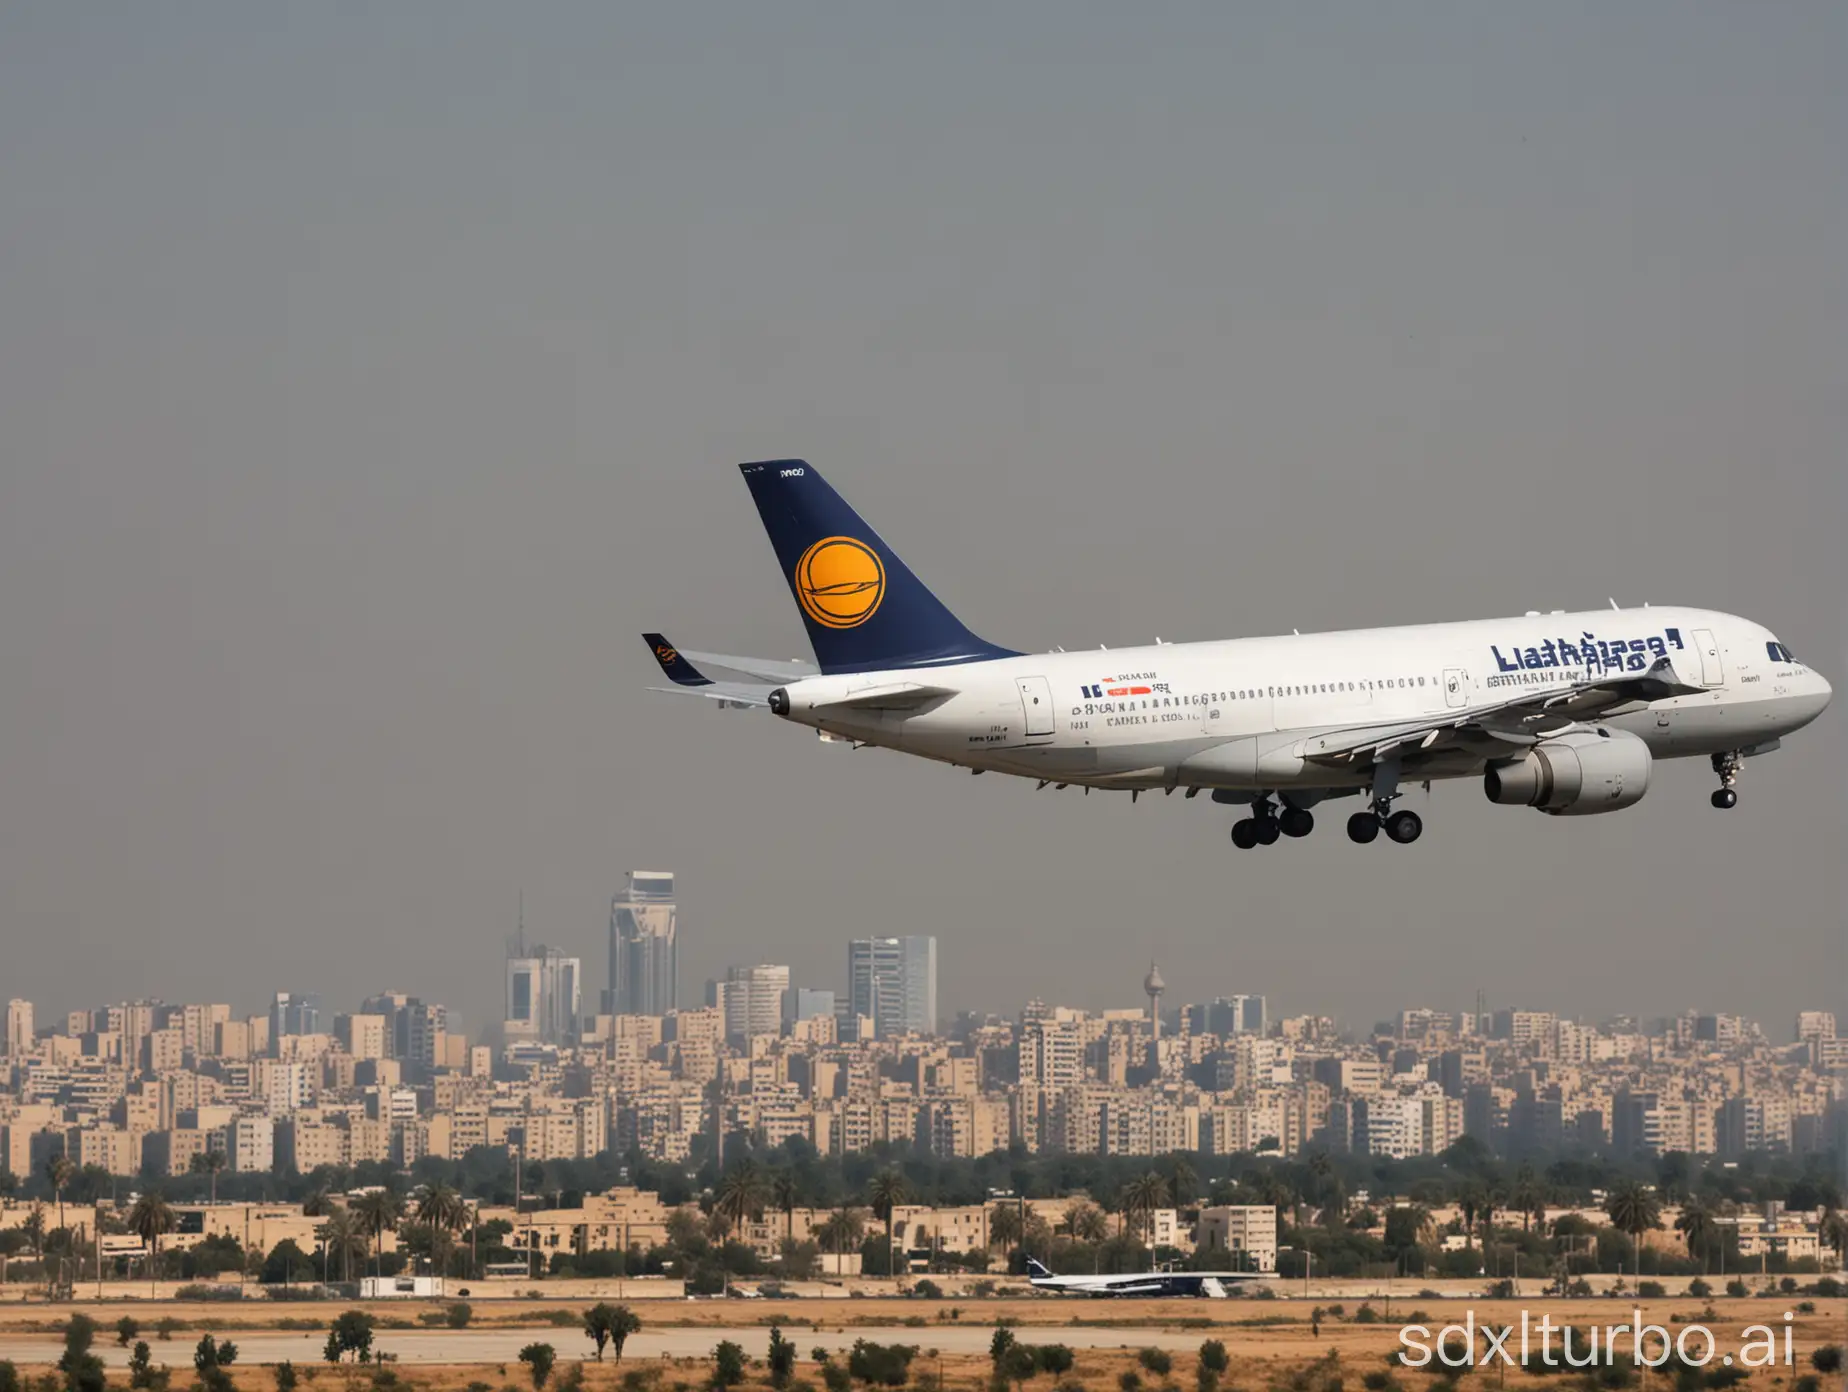 Lufthansa-Aircraft-Approaching-Cairo-Airport